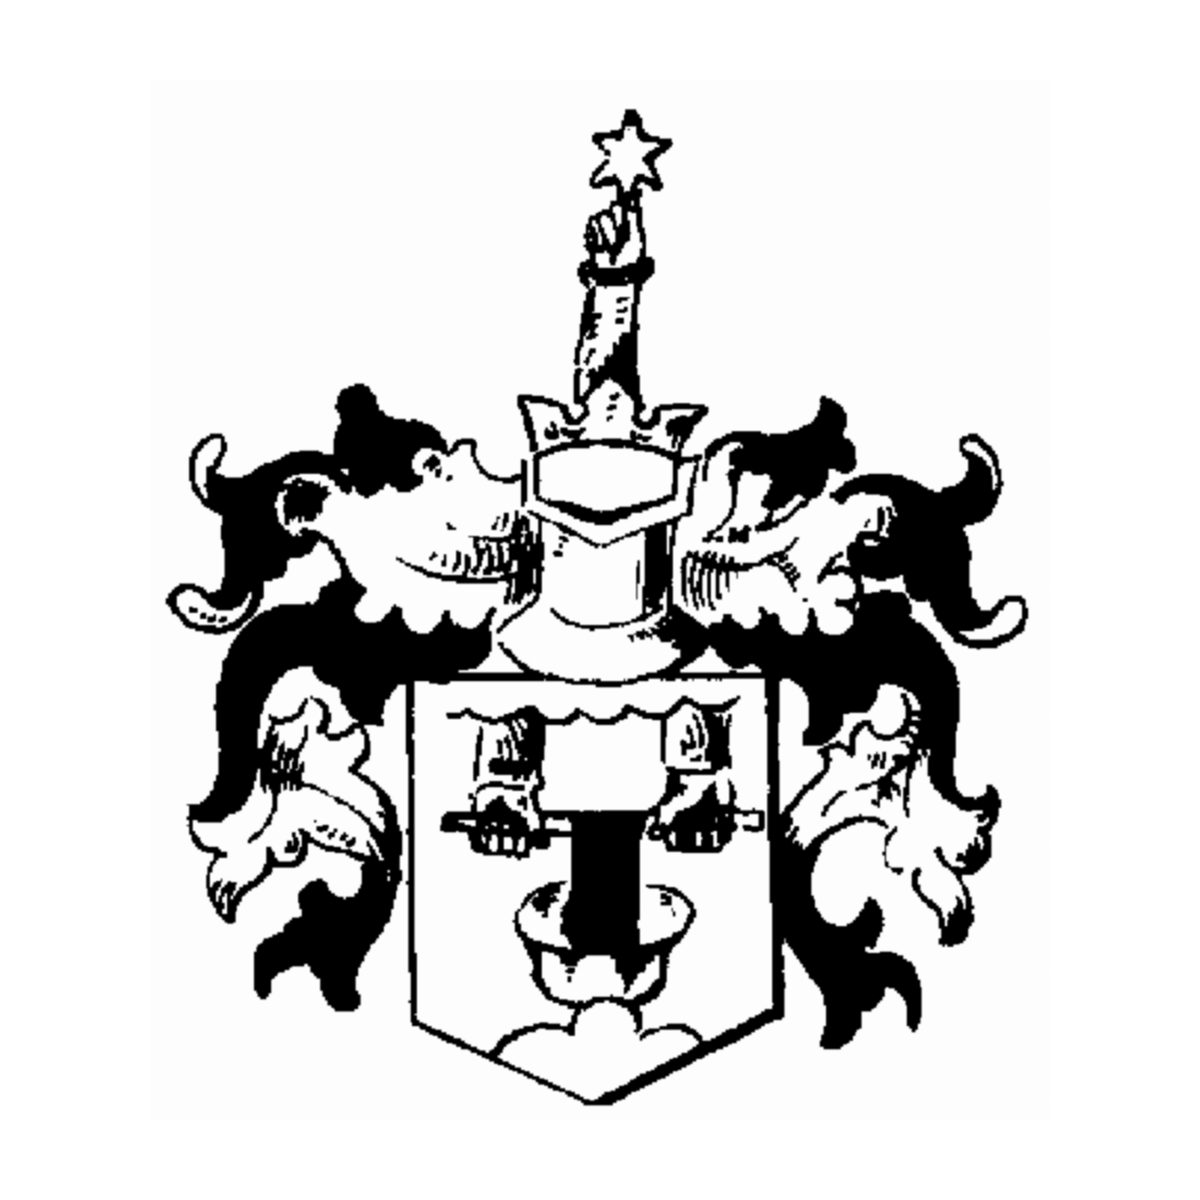 Wappen der Familie Oliver